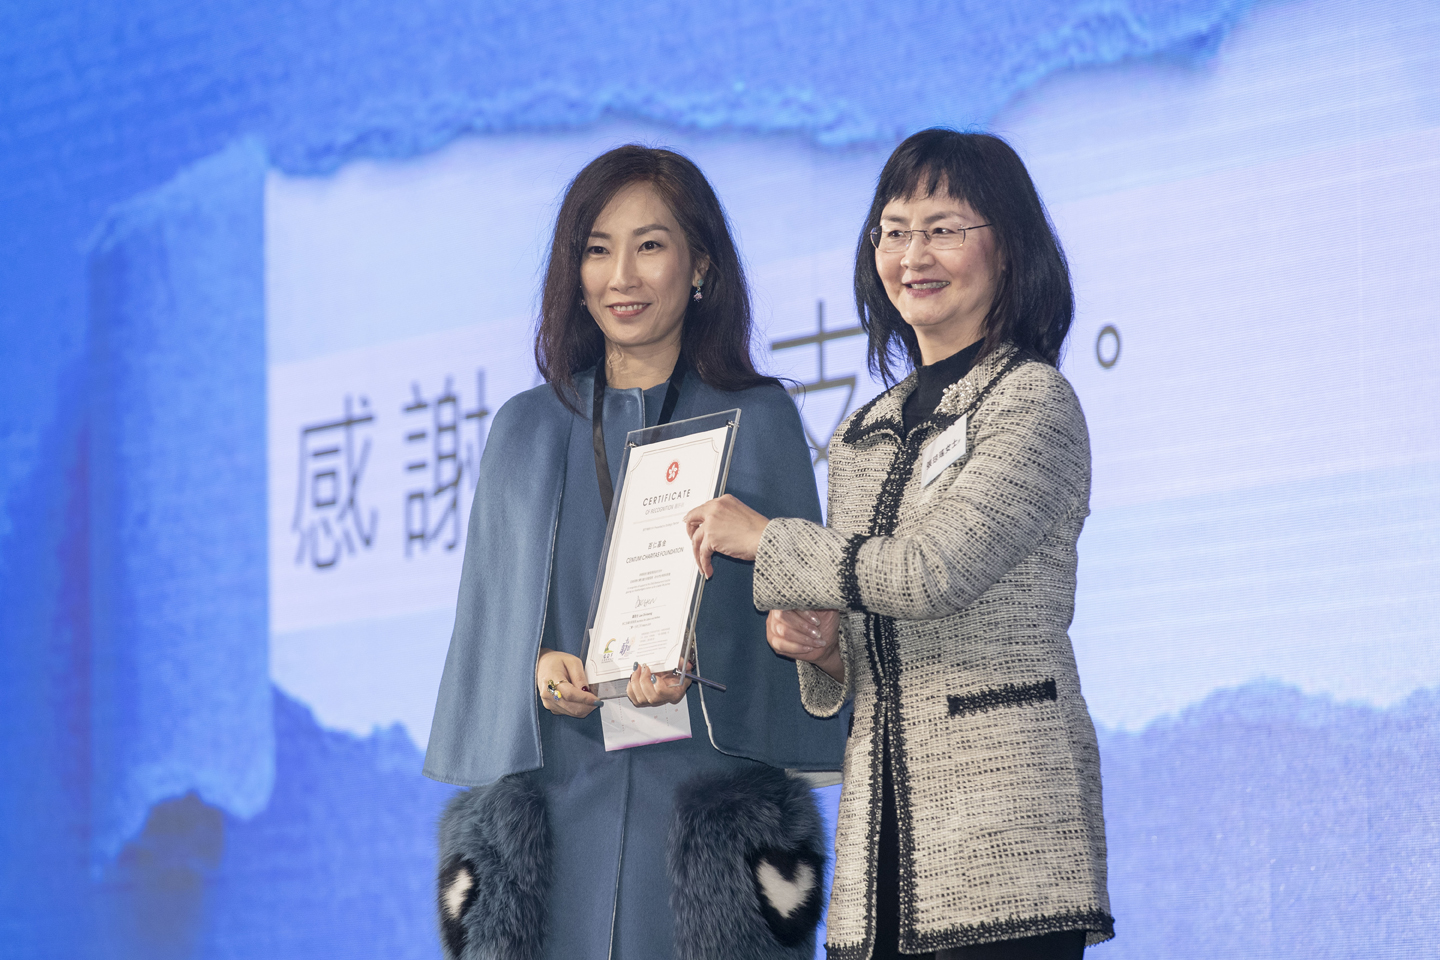 百仁基金副主席严伟贤女士代表机构接受「策略伙伴」嘉许状。